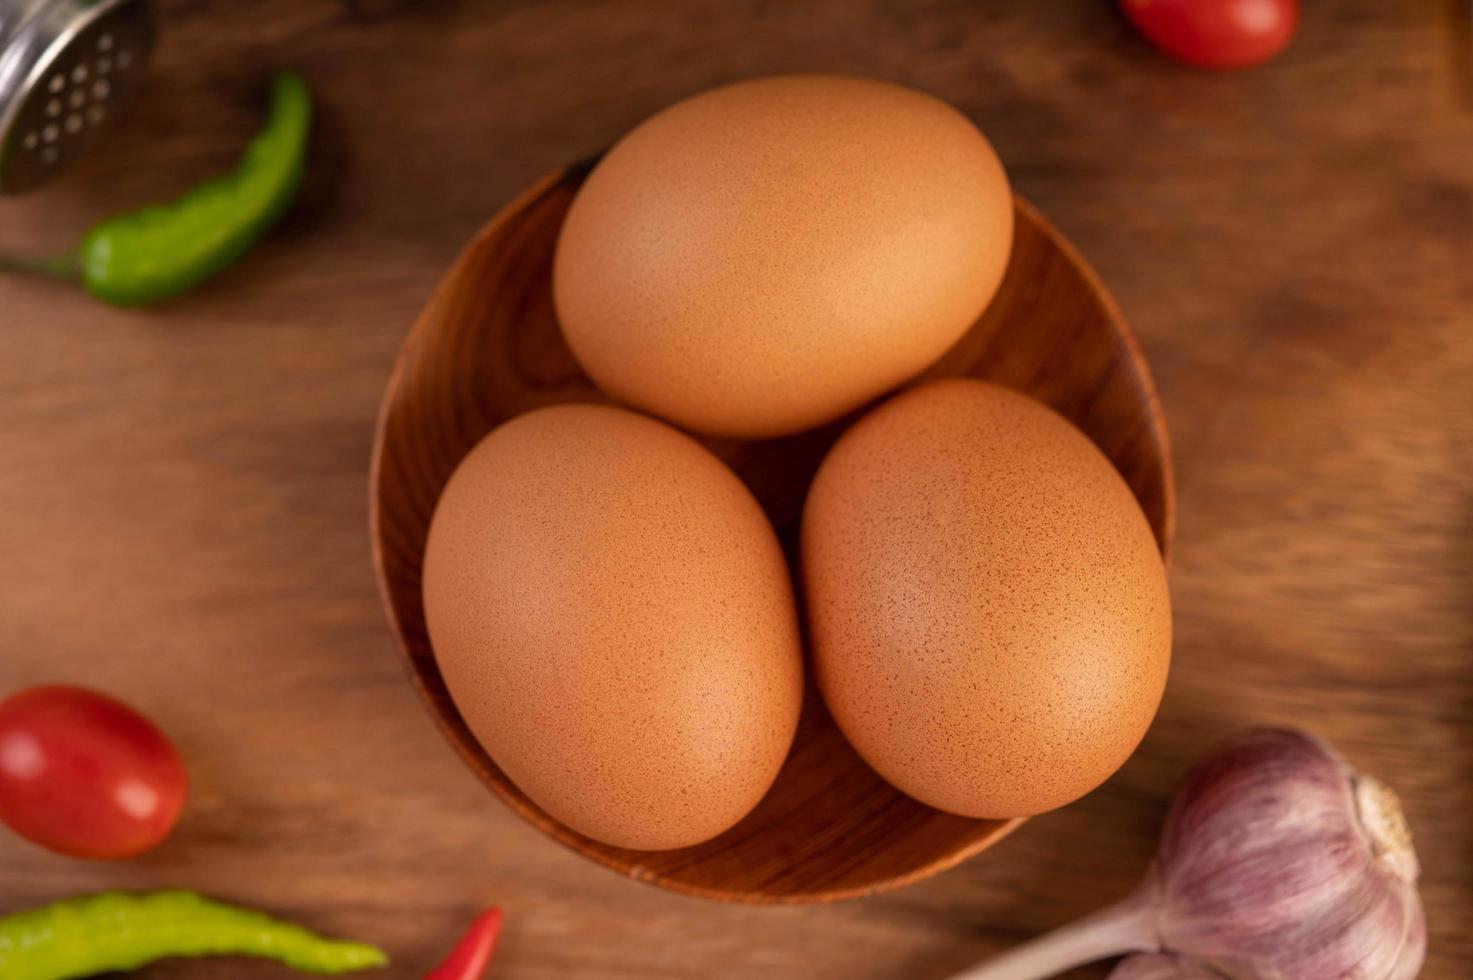 trois œufs de poule photo